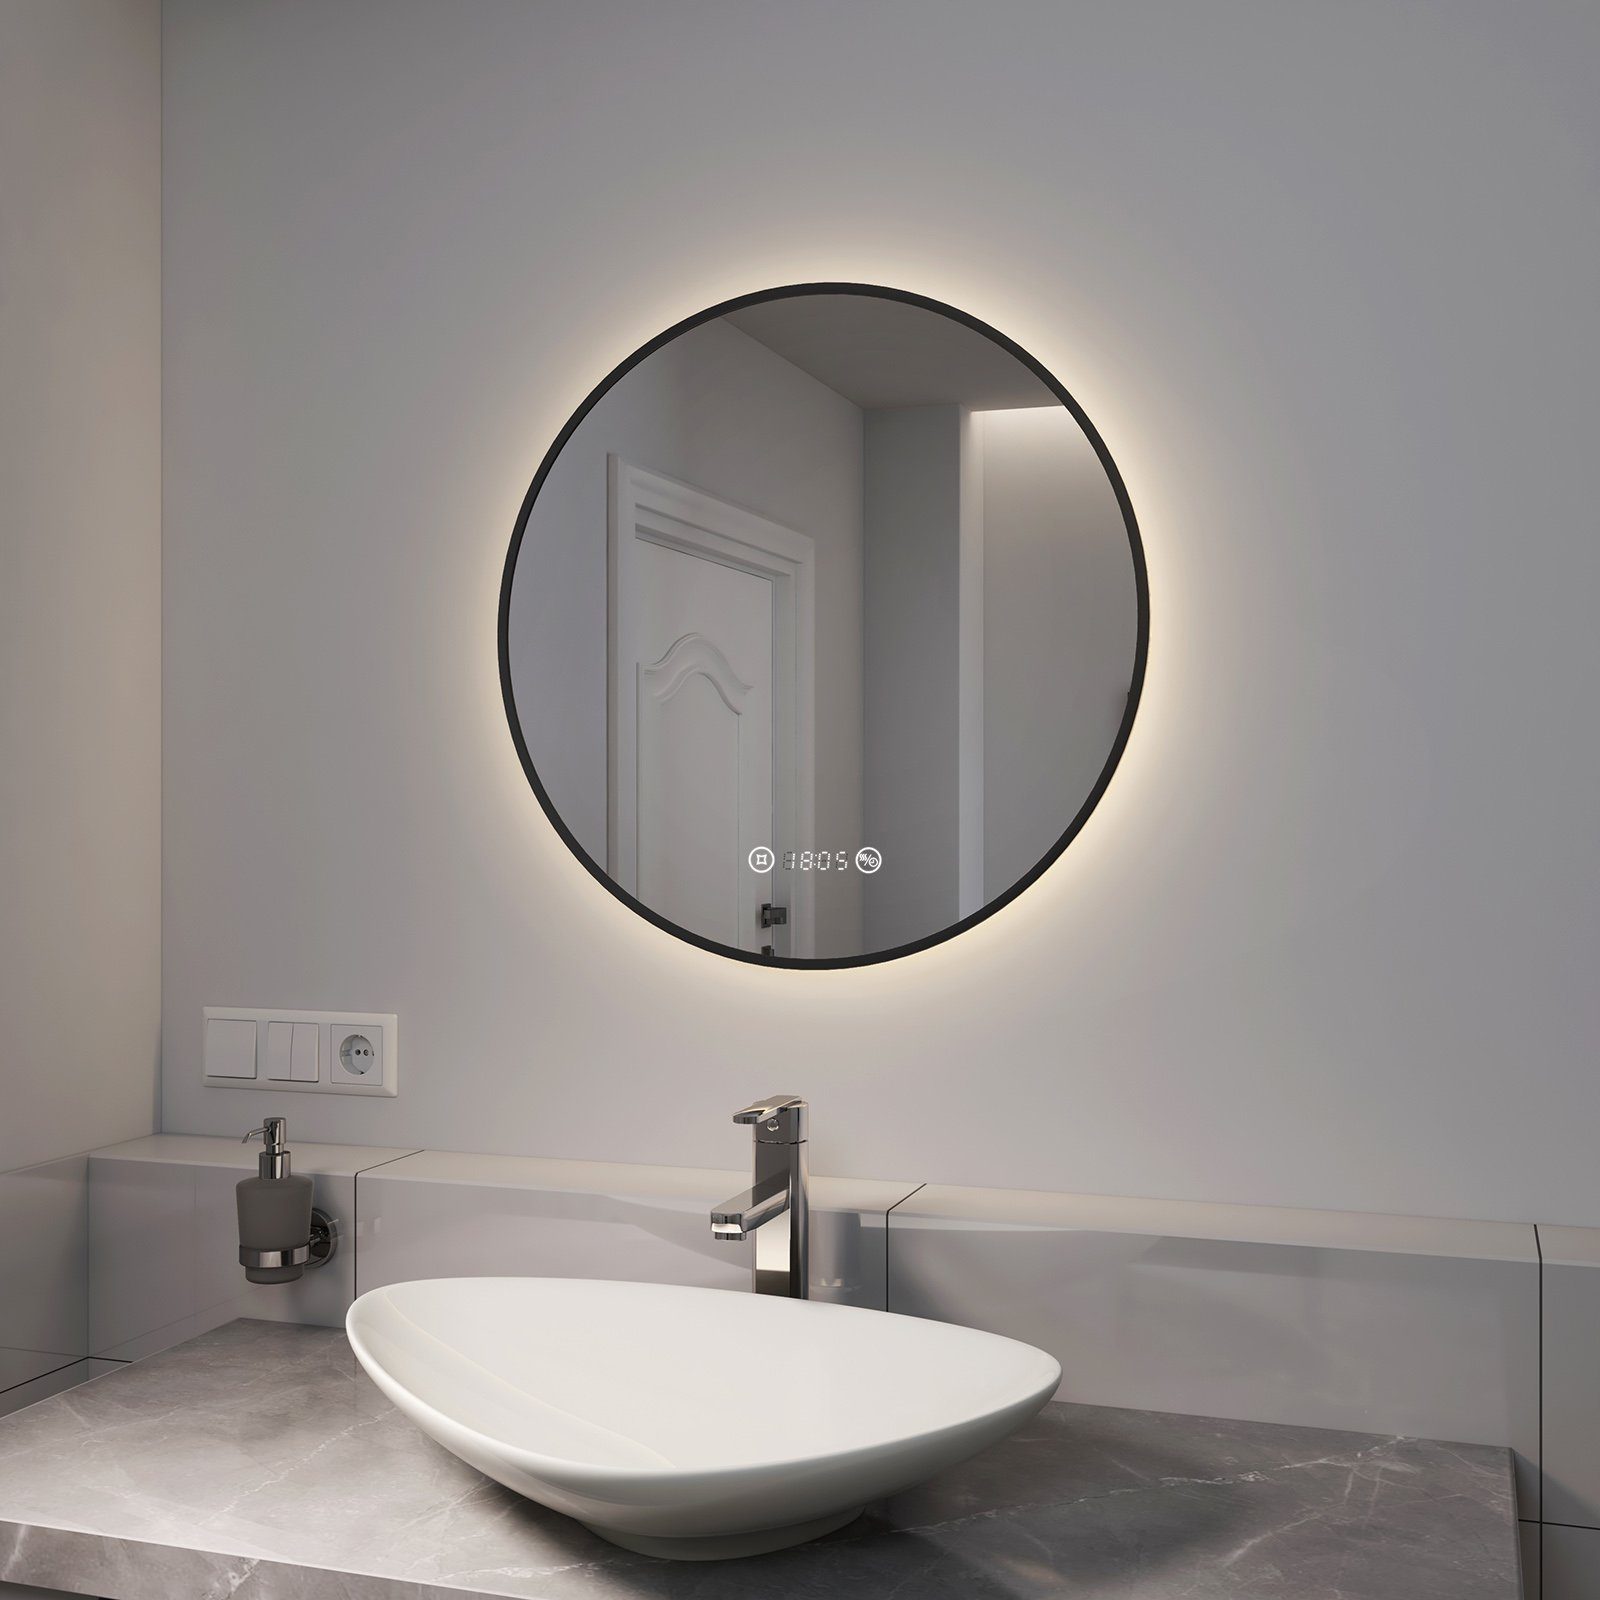 EMKE Badspiegel »EMKE LED Badspiegel Rund Spiegel mit Beleuchtung Schwarz«,  mit Touch, Antibeschlage, Uhr, Temperatur, Dimmbar, Memory-Funktion online  kaufen | OTTO